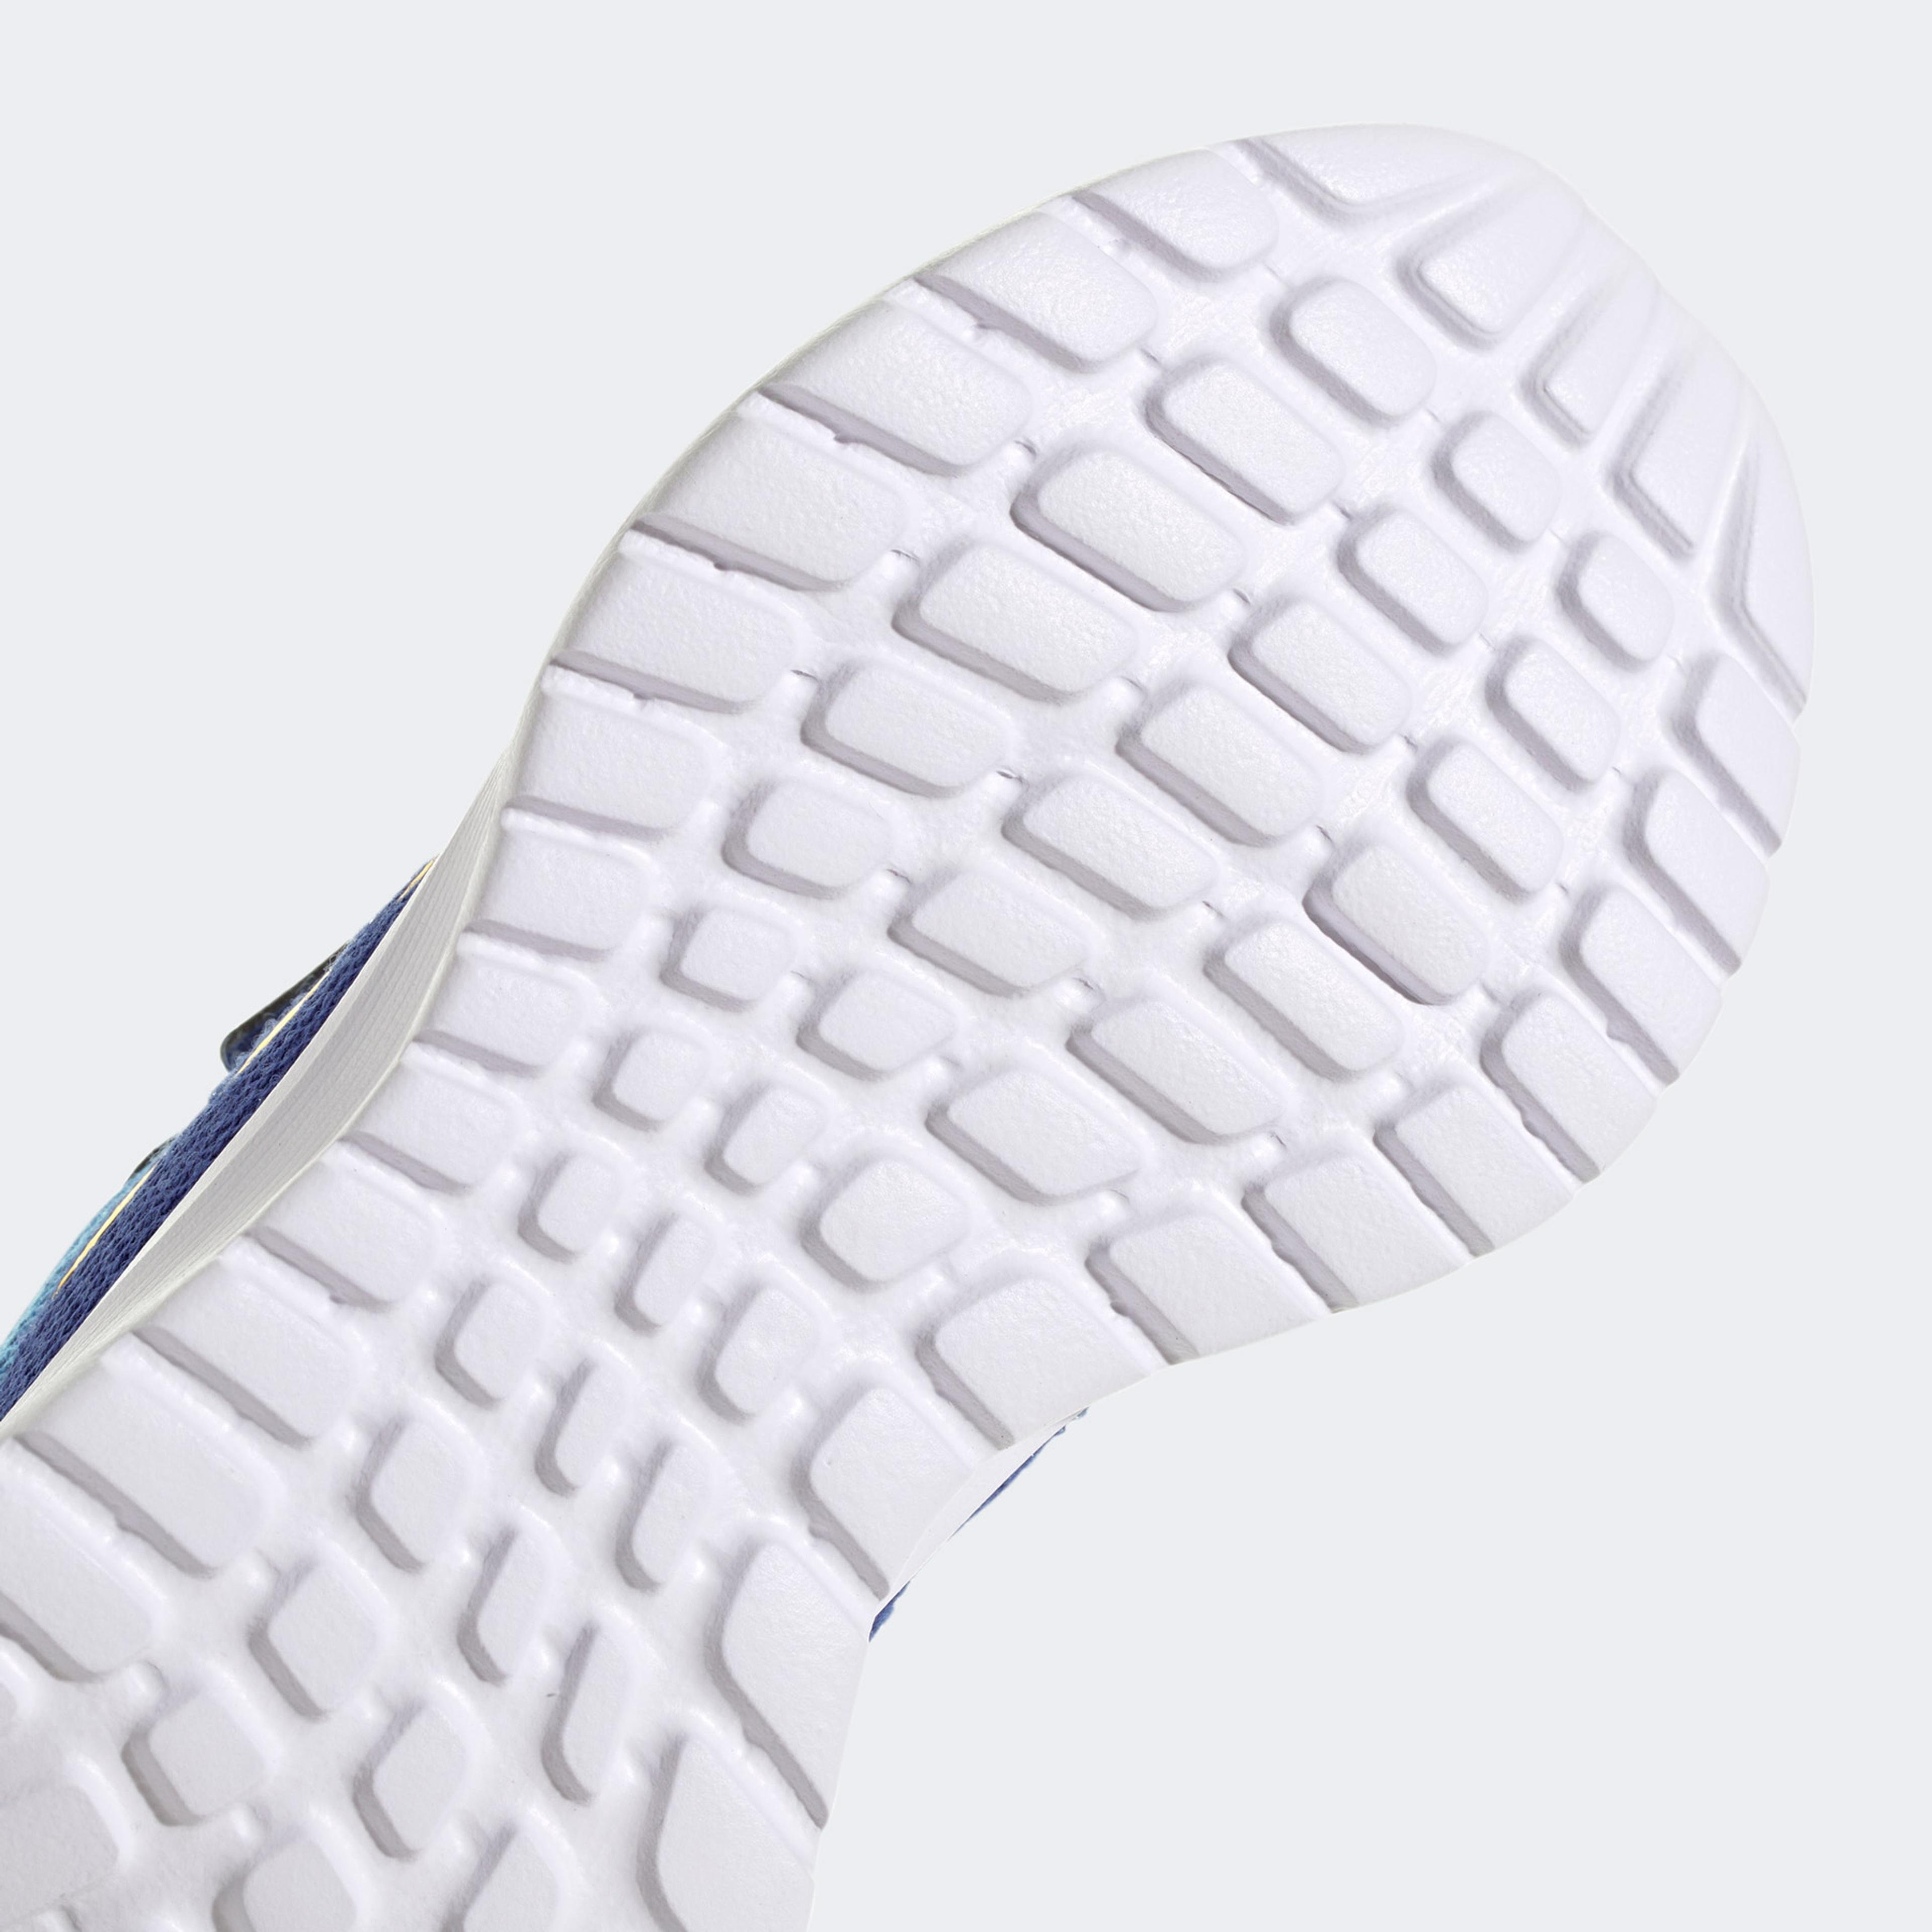 adidas Sportswear Tensaur Run 2.0 Cf Çocuk Mavi Spor Ayakkabı